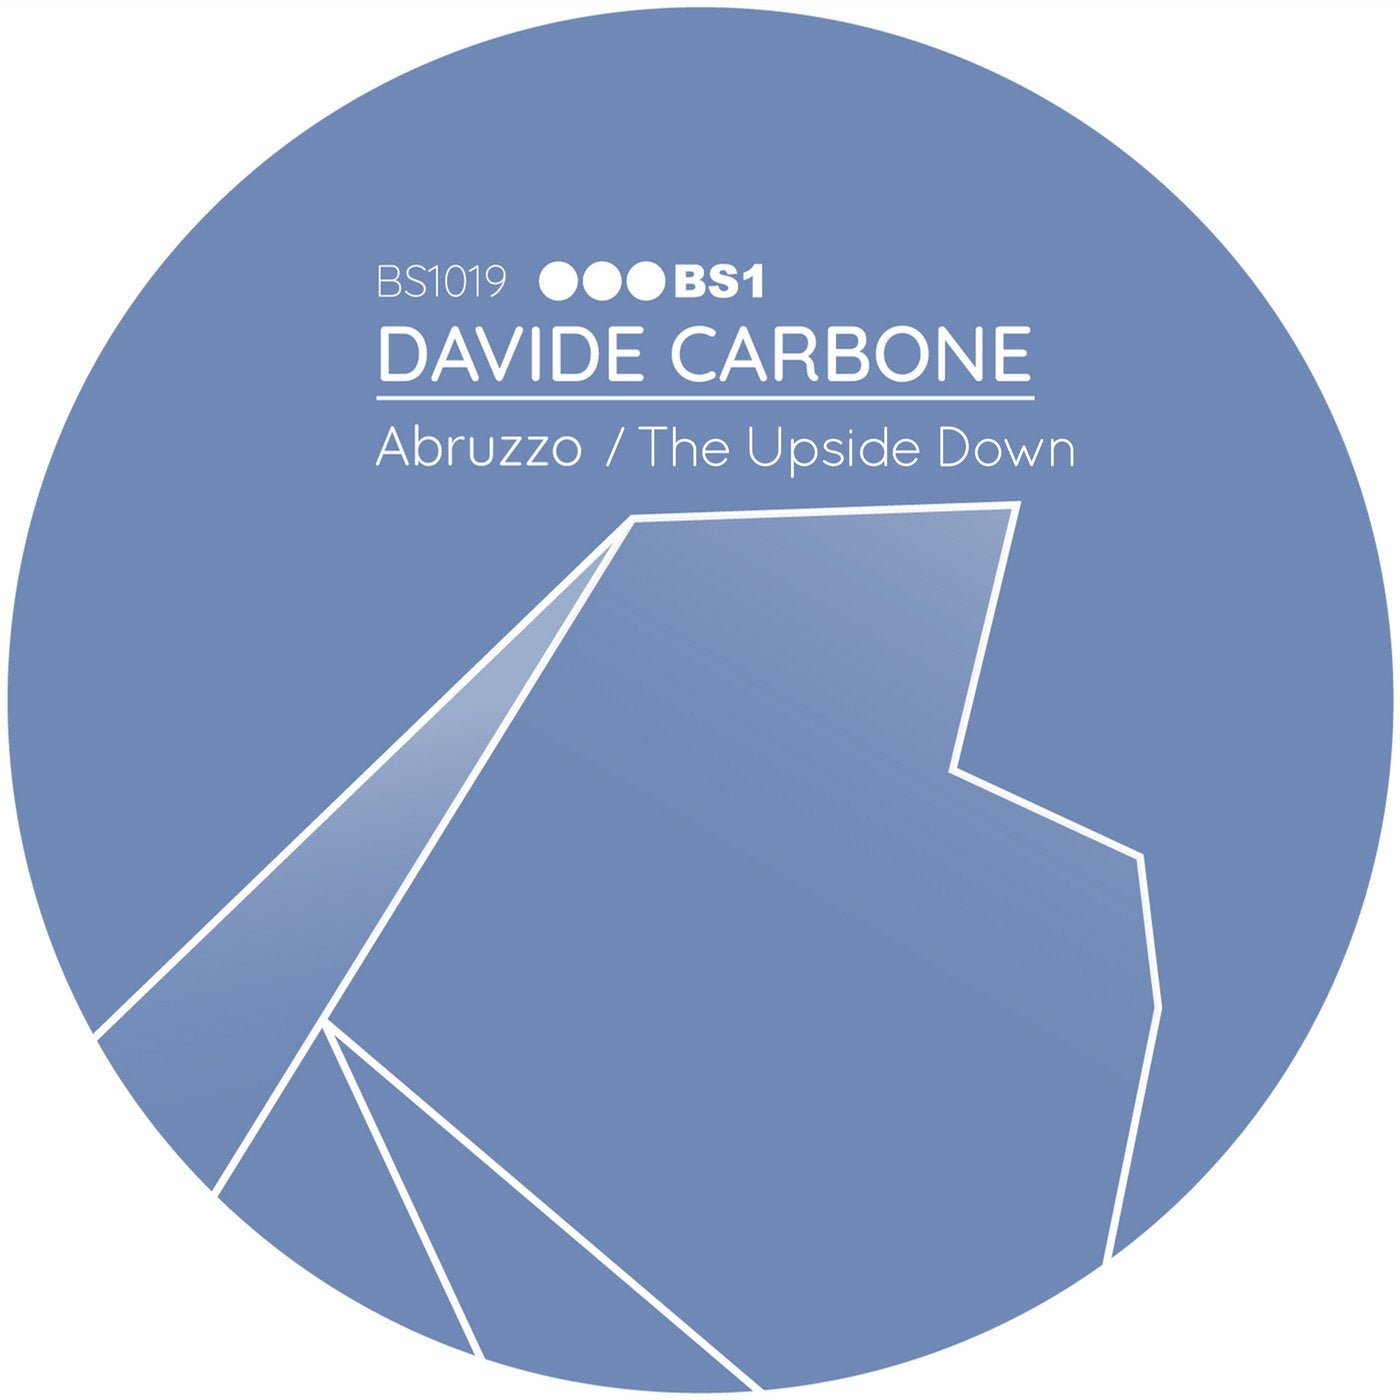 Abruzzo / The Upside Down